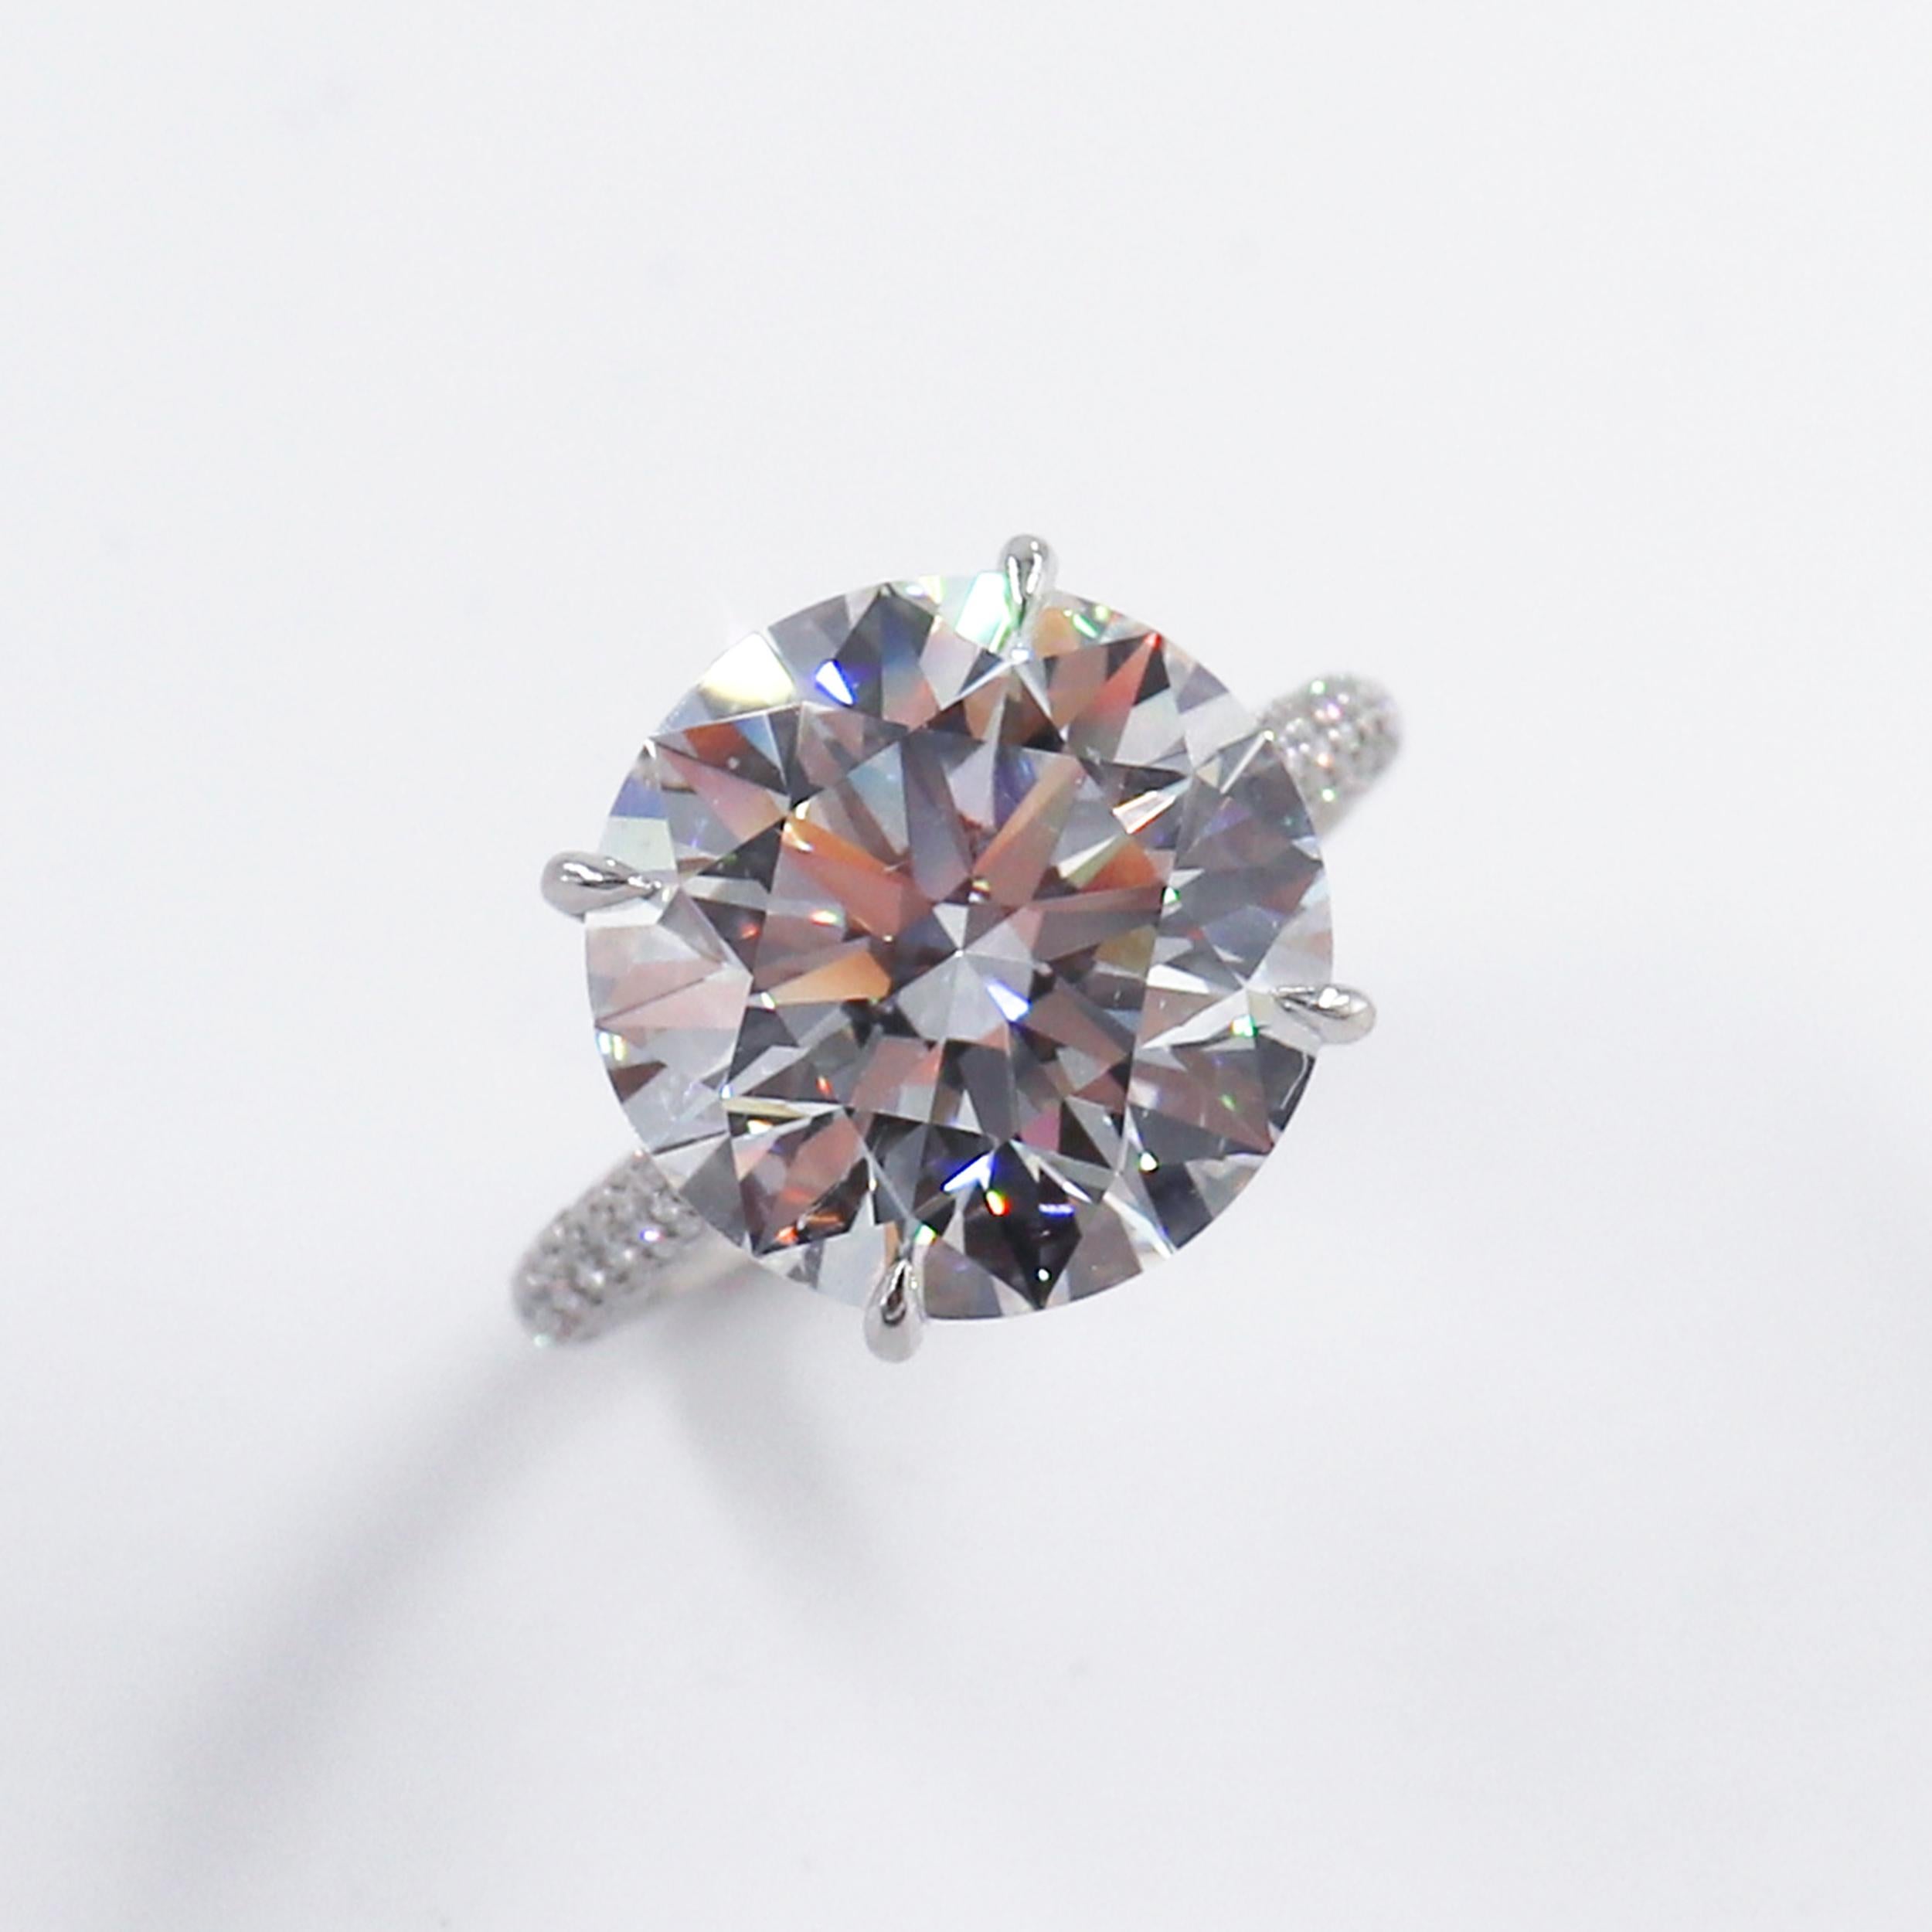 8 carat diamond ring price